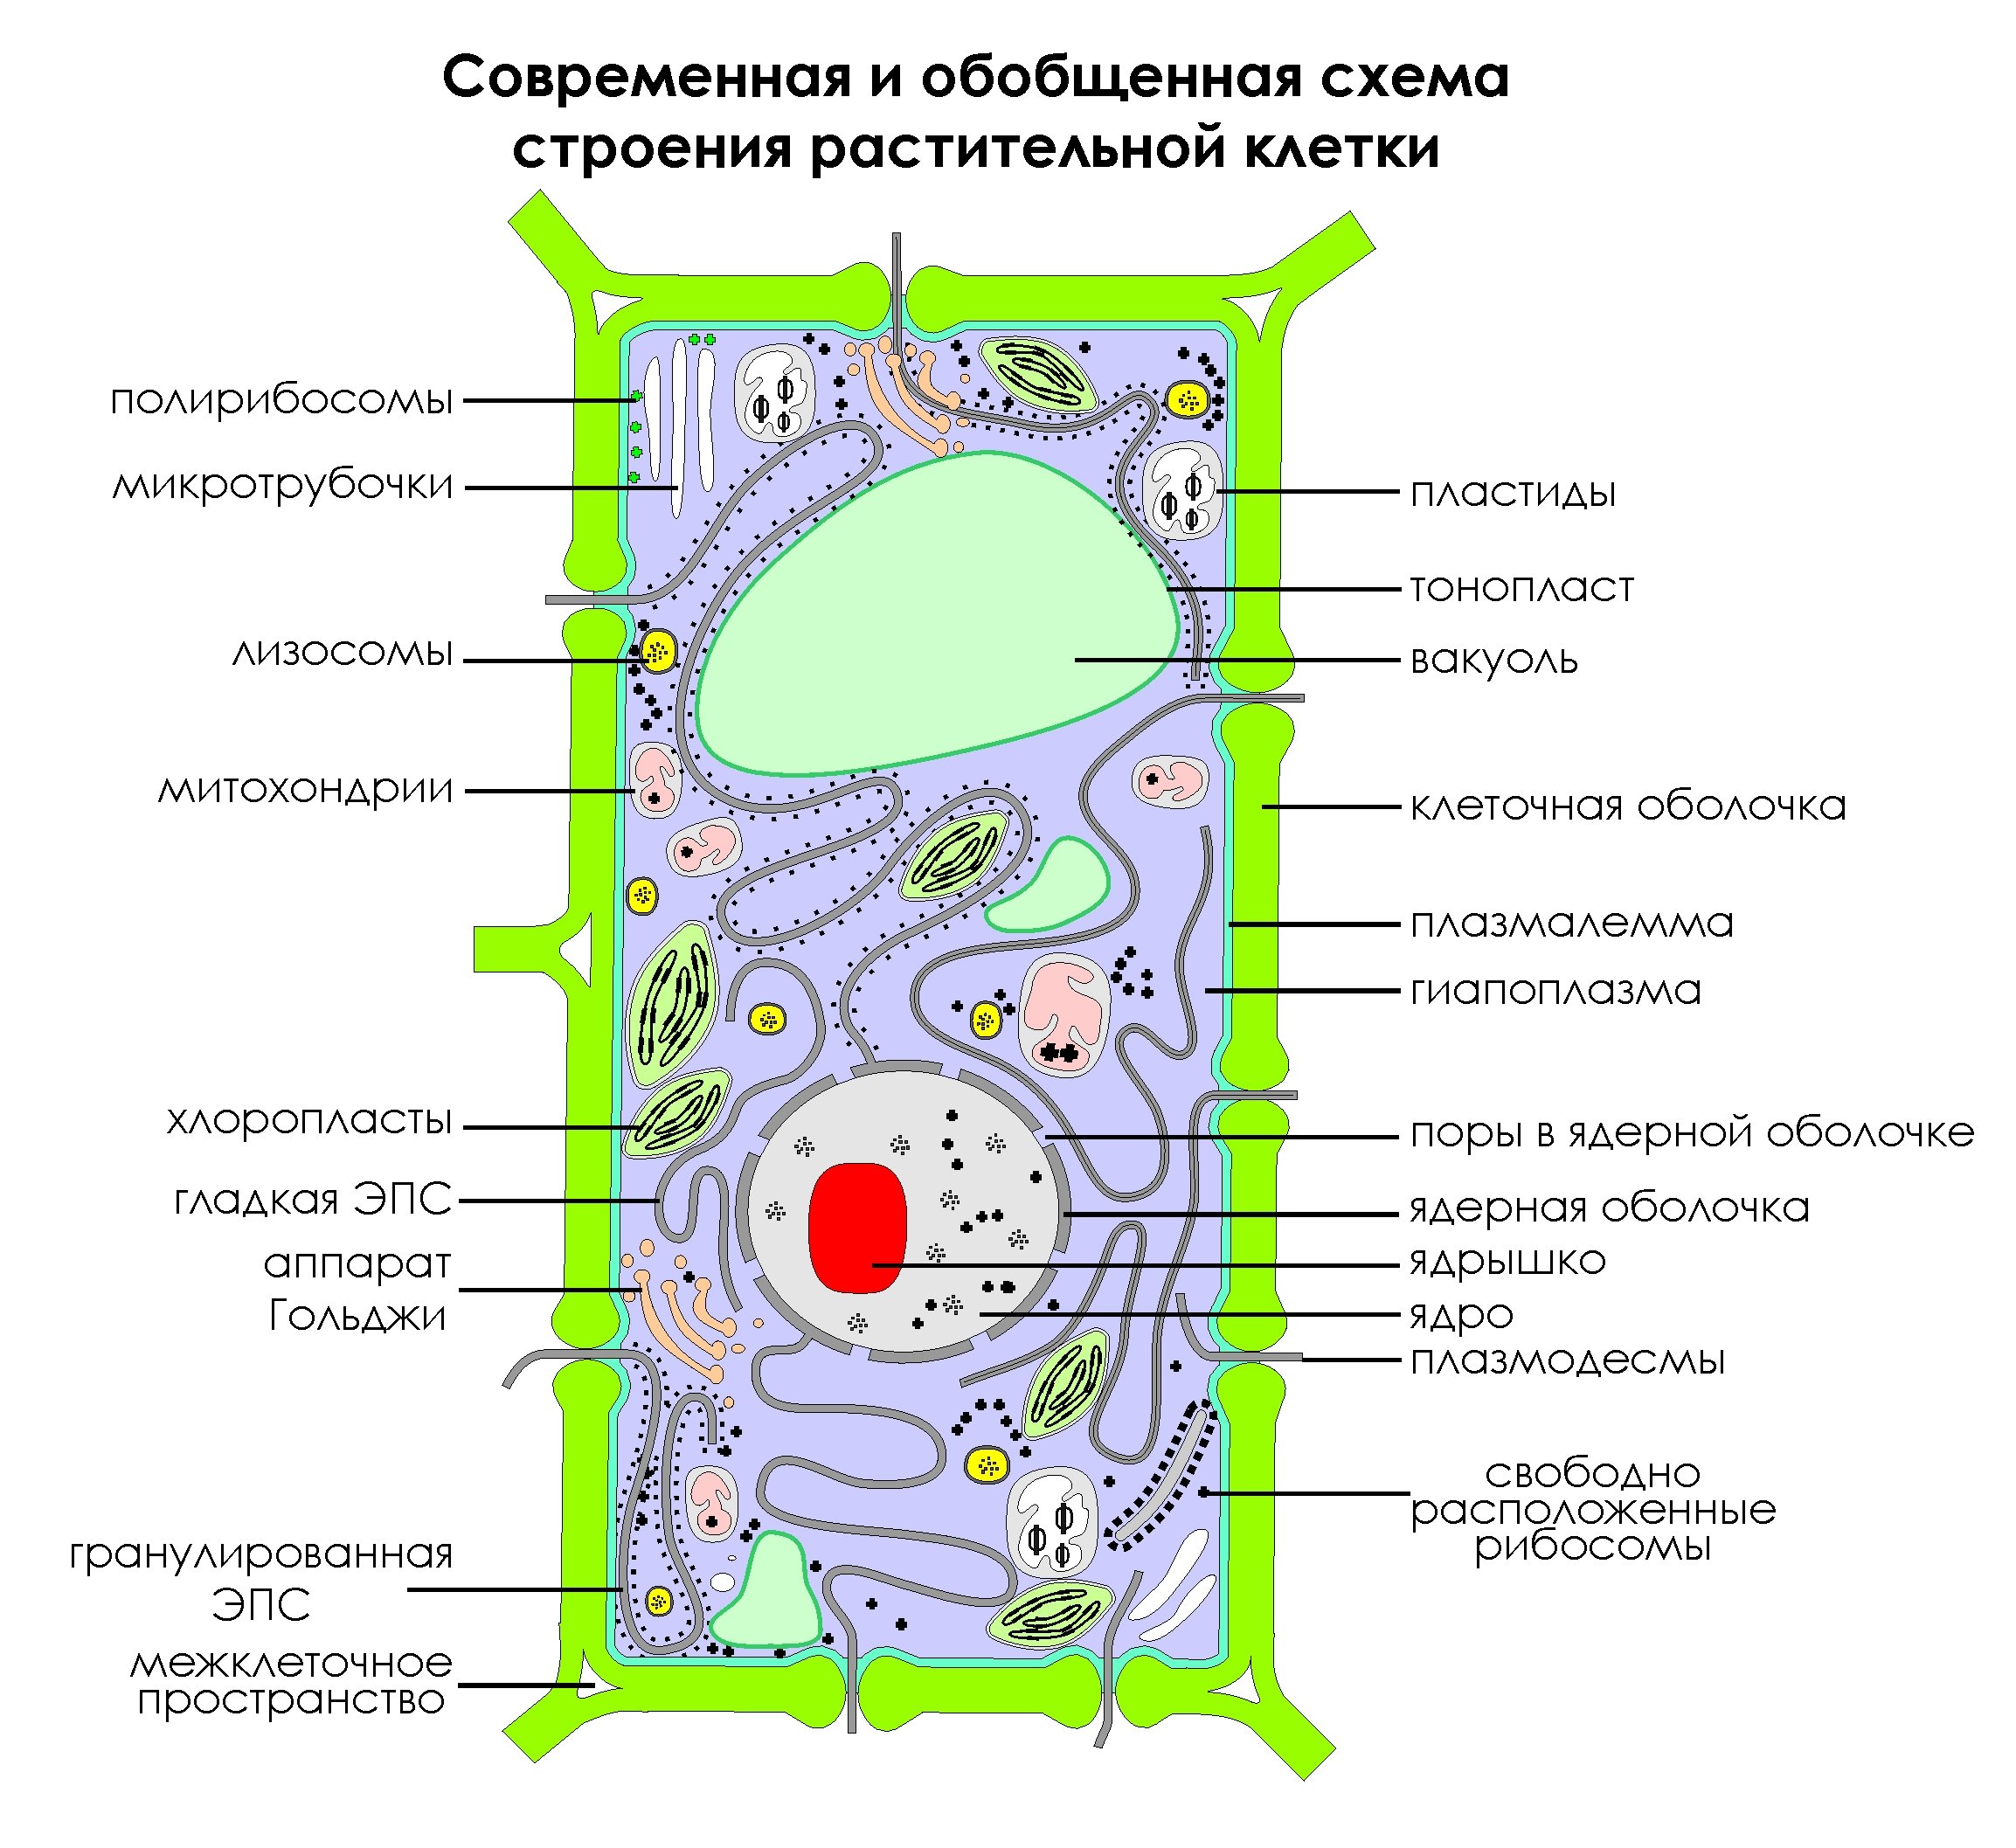 Растительная клетка подписанная. Схема строения клетки растения. Современная обобщенная схема строения растительной клетки. Изображение растительной клетки схема. Обобщенная схема строения растительной клетки.